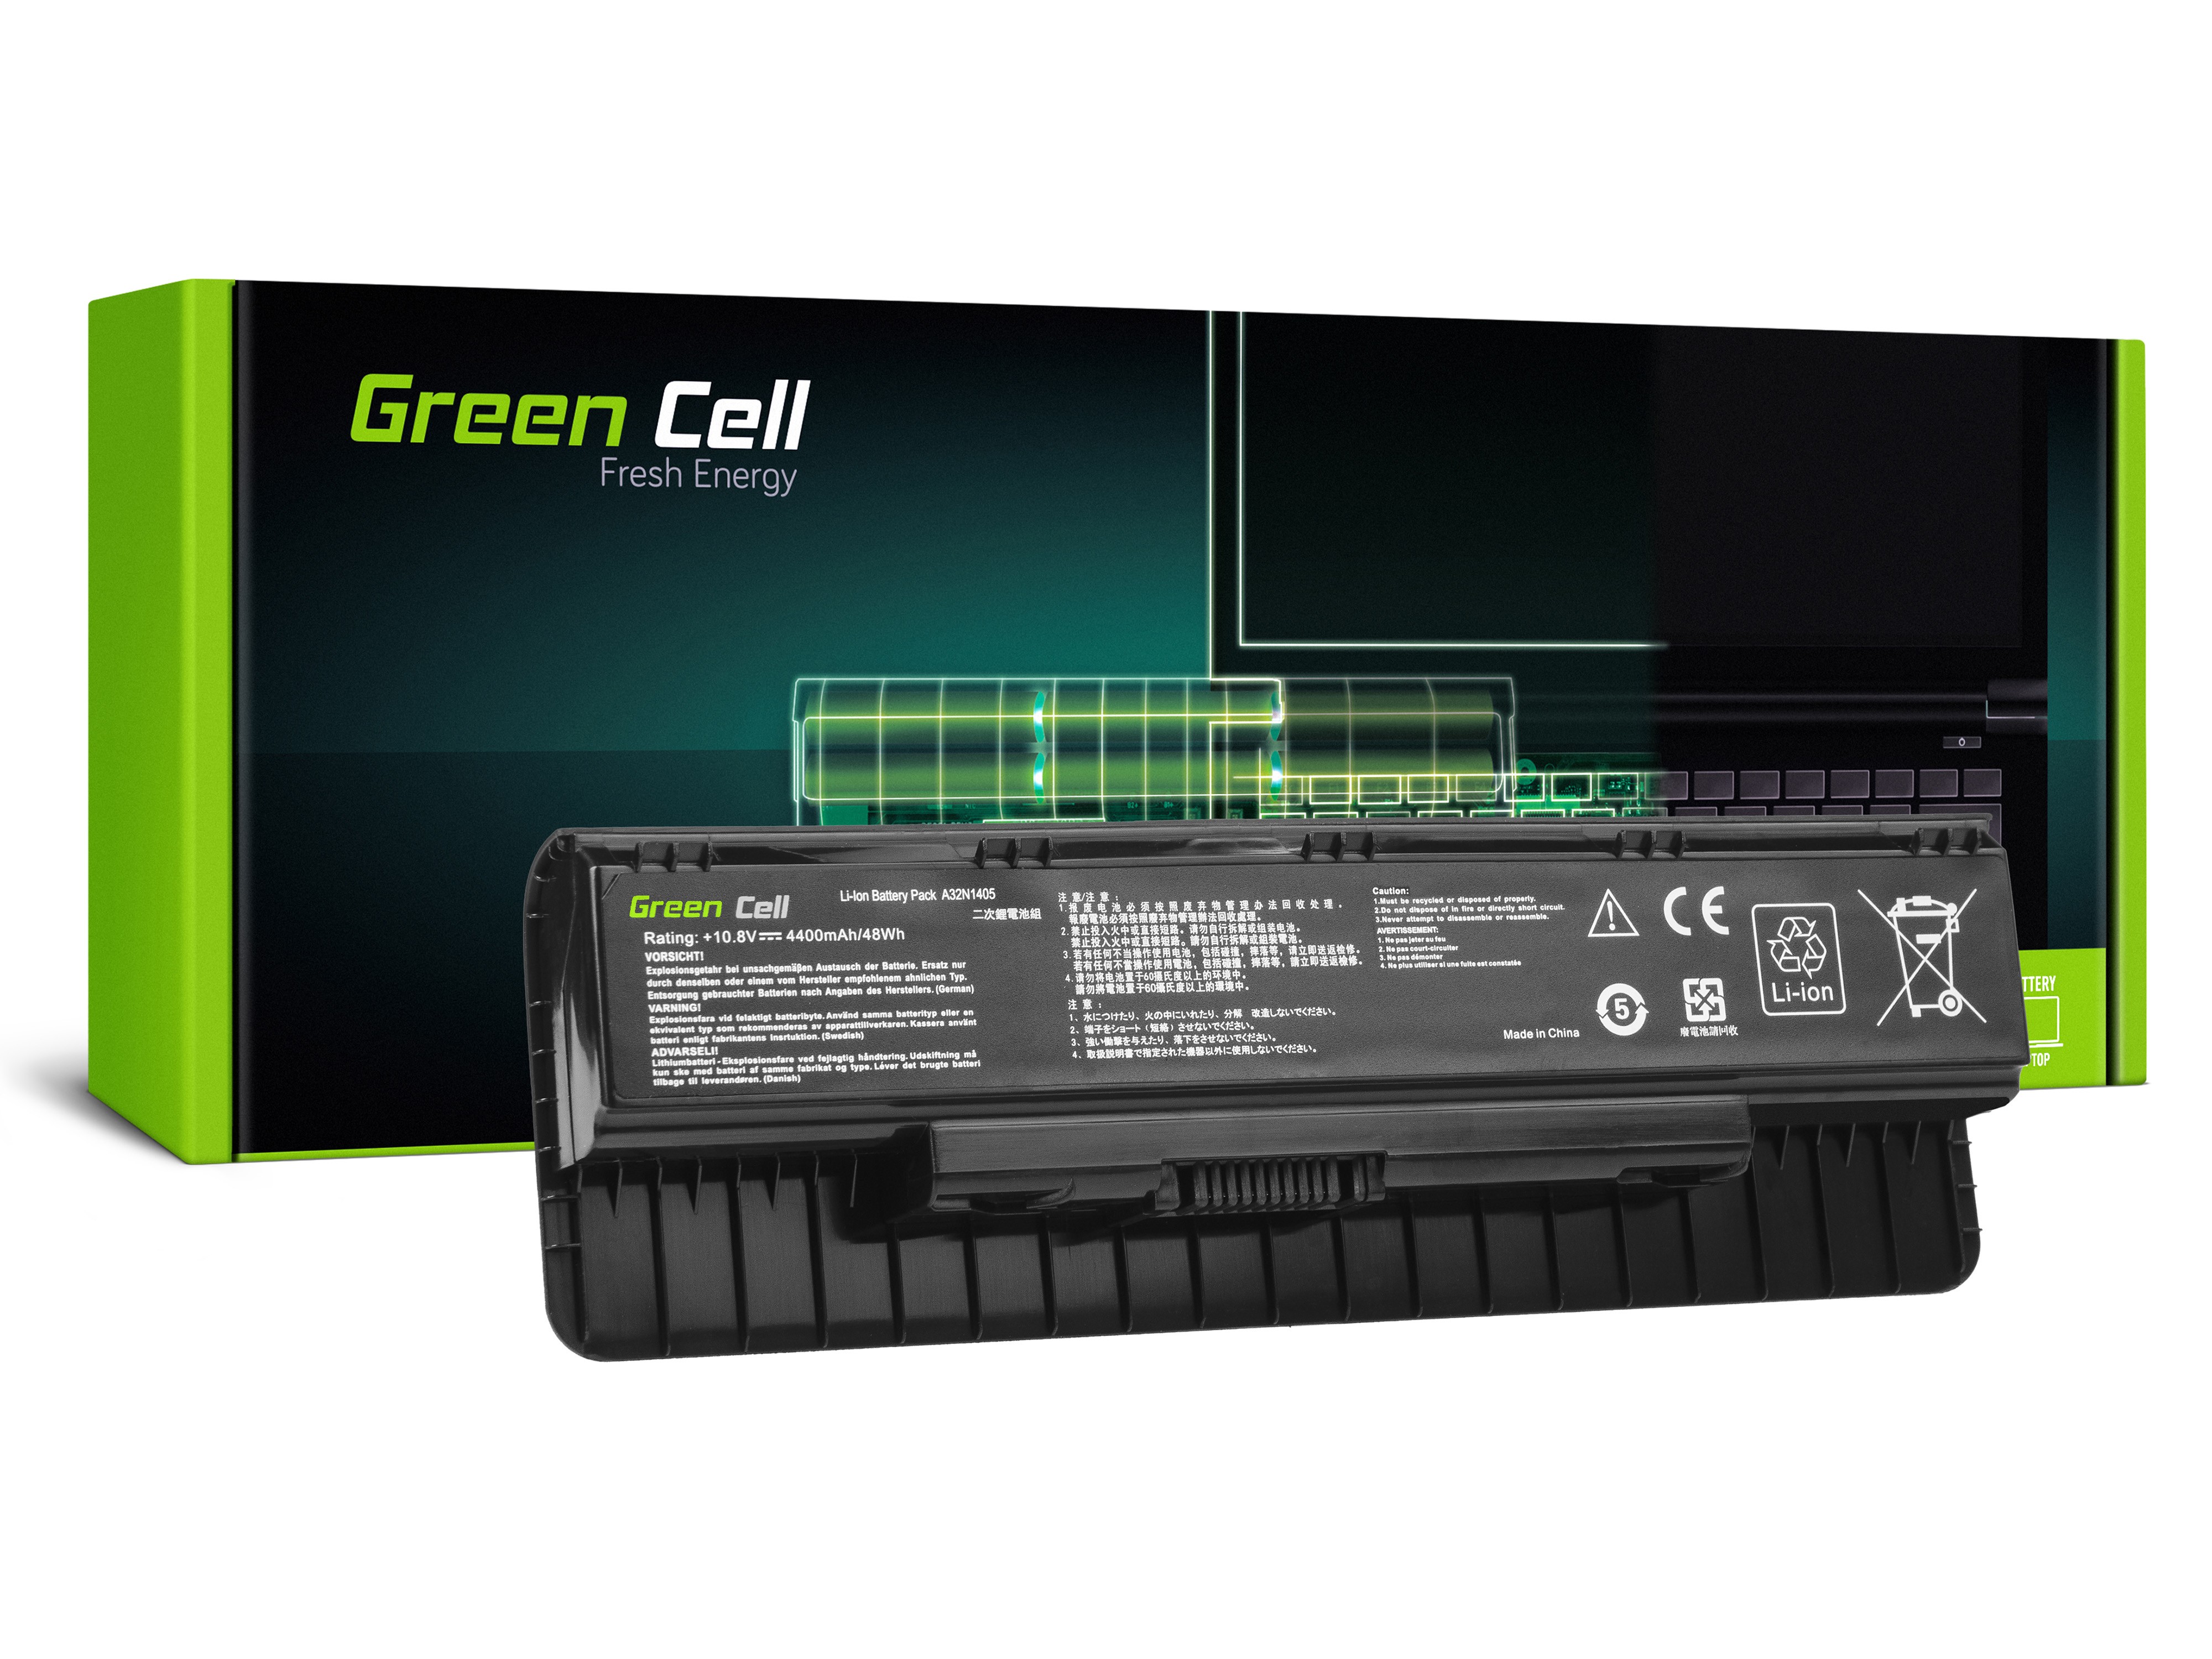 Green Cell A32N1405 Battery for Asus G551 G551J G551JM G551JW G771 G771J G771JM G771JW N551 N551J N551JM N551JW N551JX